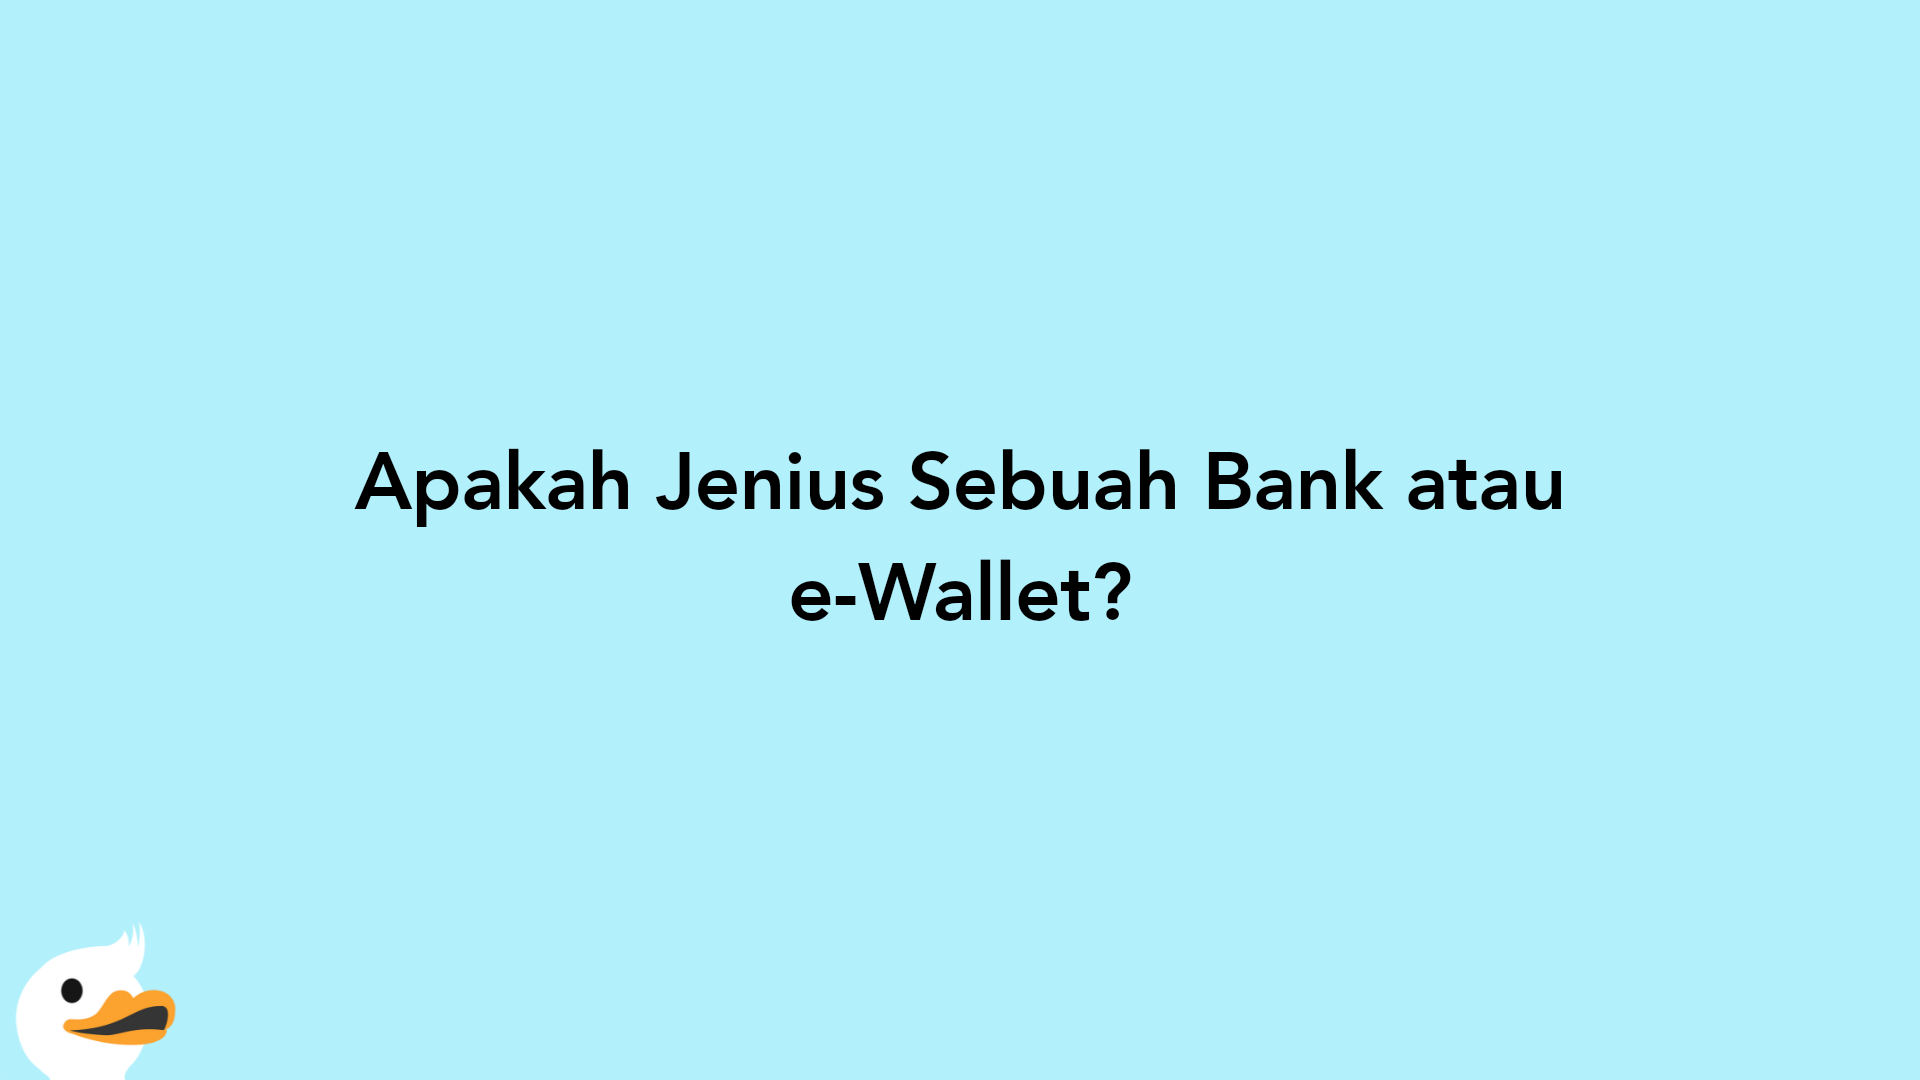 Apakah Jenius Sebuah Bank atau e-Wallet?